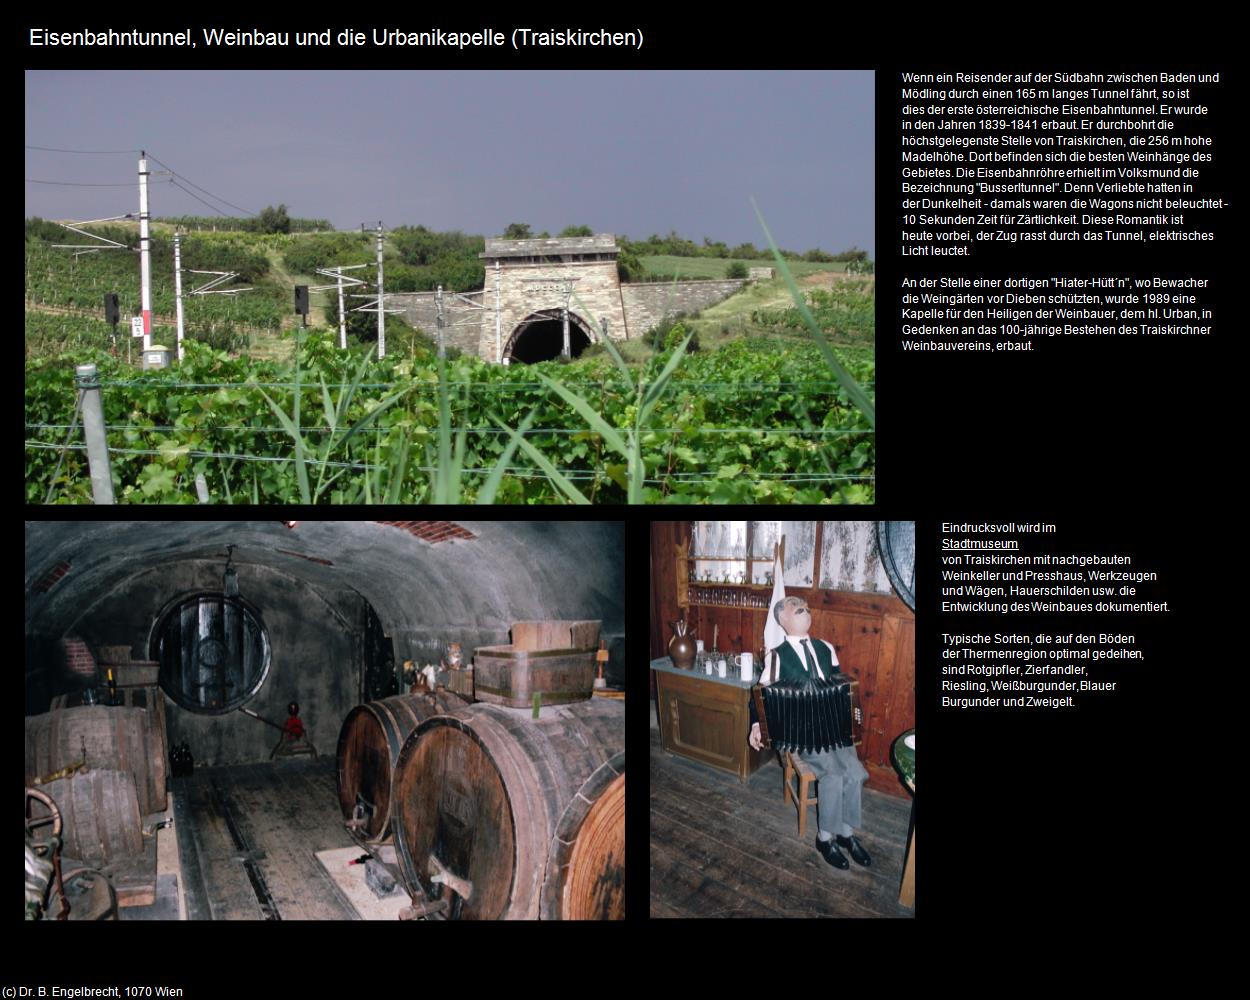 Eisenbahntunnel - Weinbau und die Urbanikapelle (Traiskirchen) in Kulturatlas-NIEDERÖSTERREICH(c)B.Engelbrecht